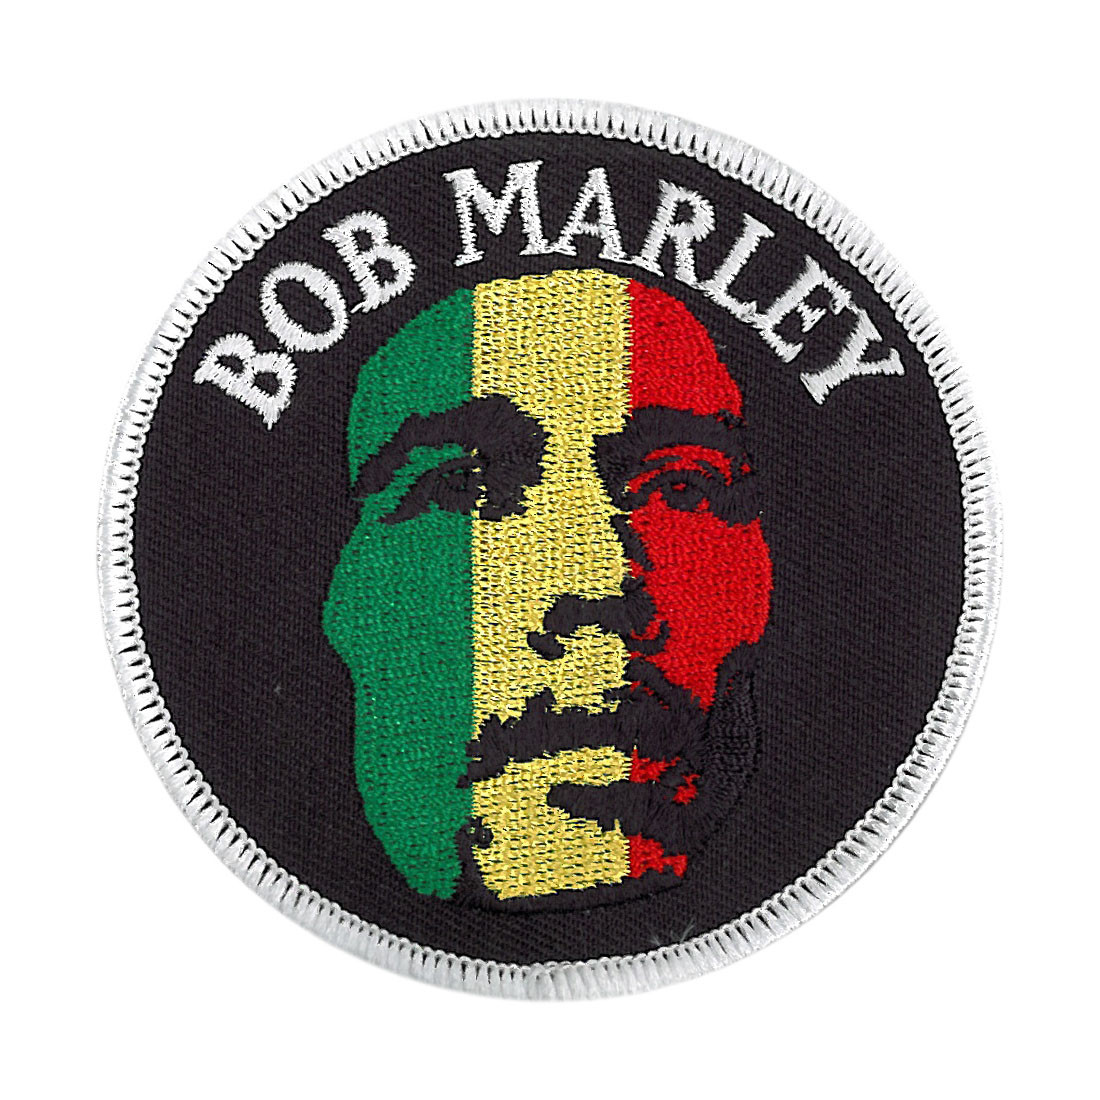 Bob Marley Face Patch Liquid Blue1100 x 1100